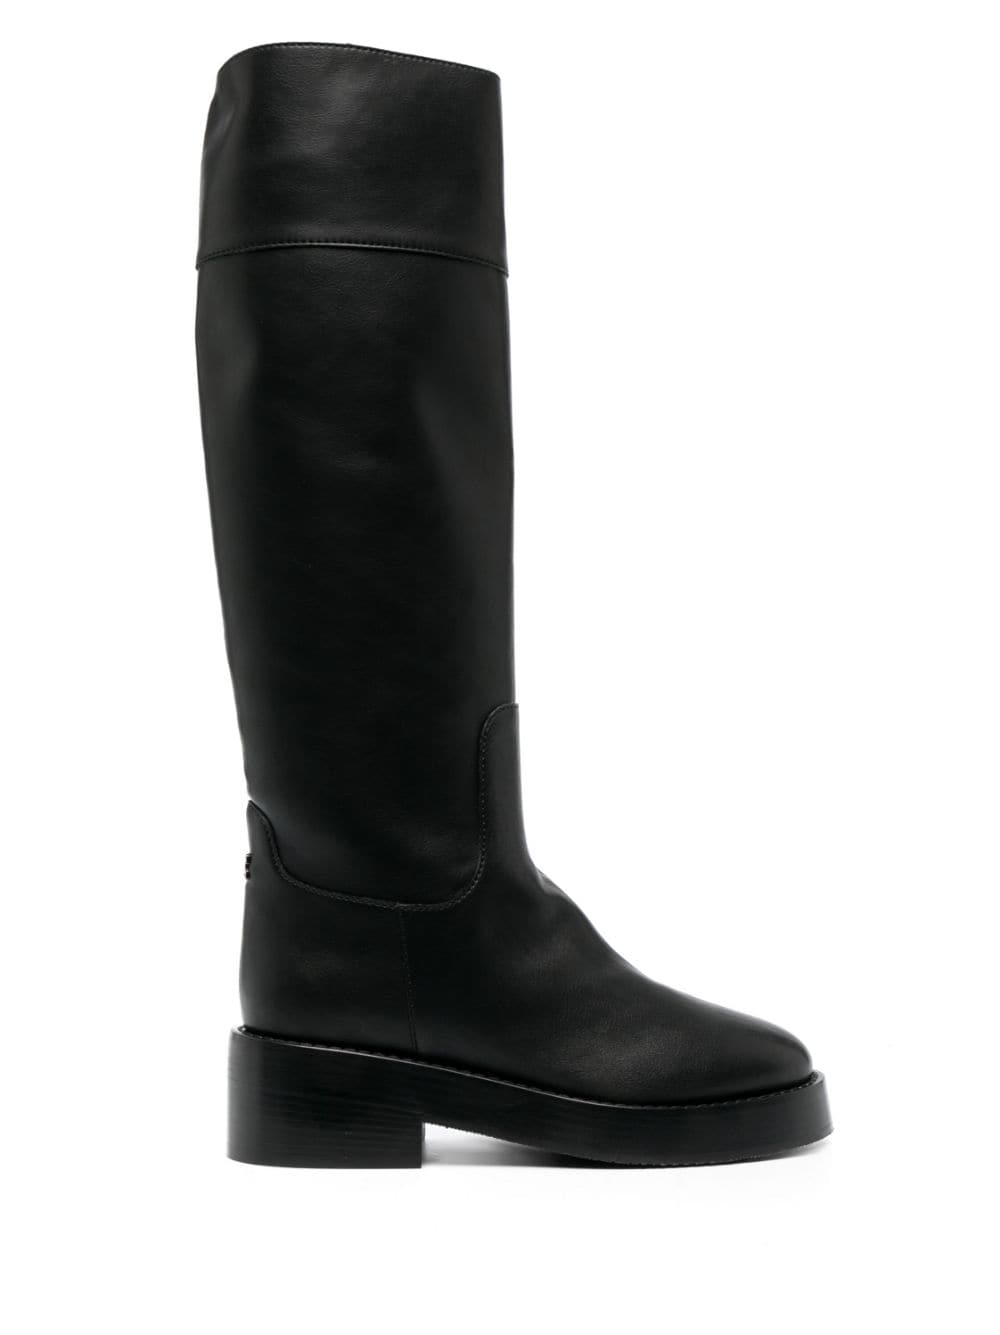 Casadei Andrea 55mm leather boots - Black von Casadei